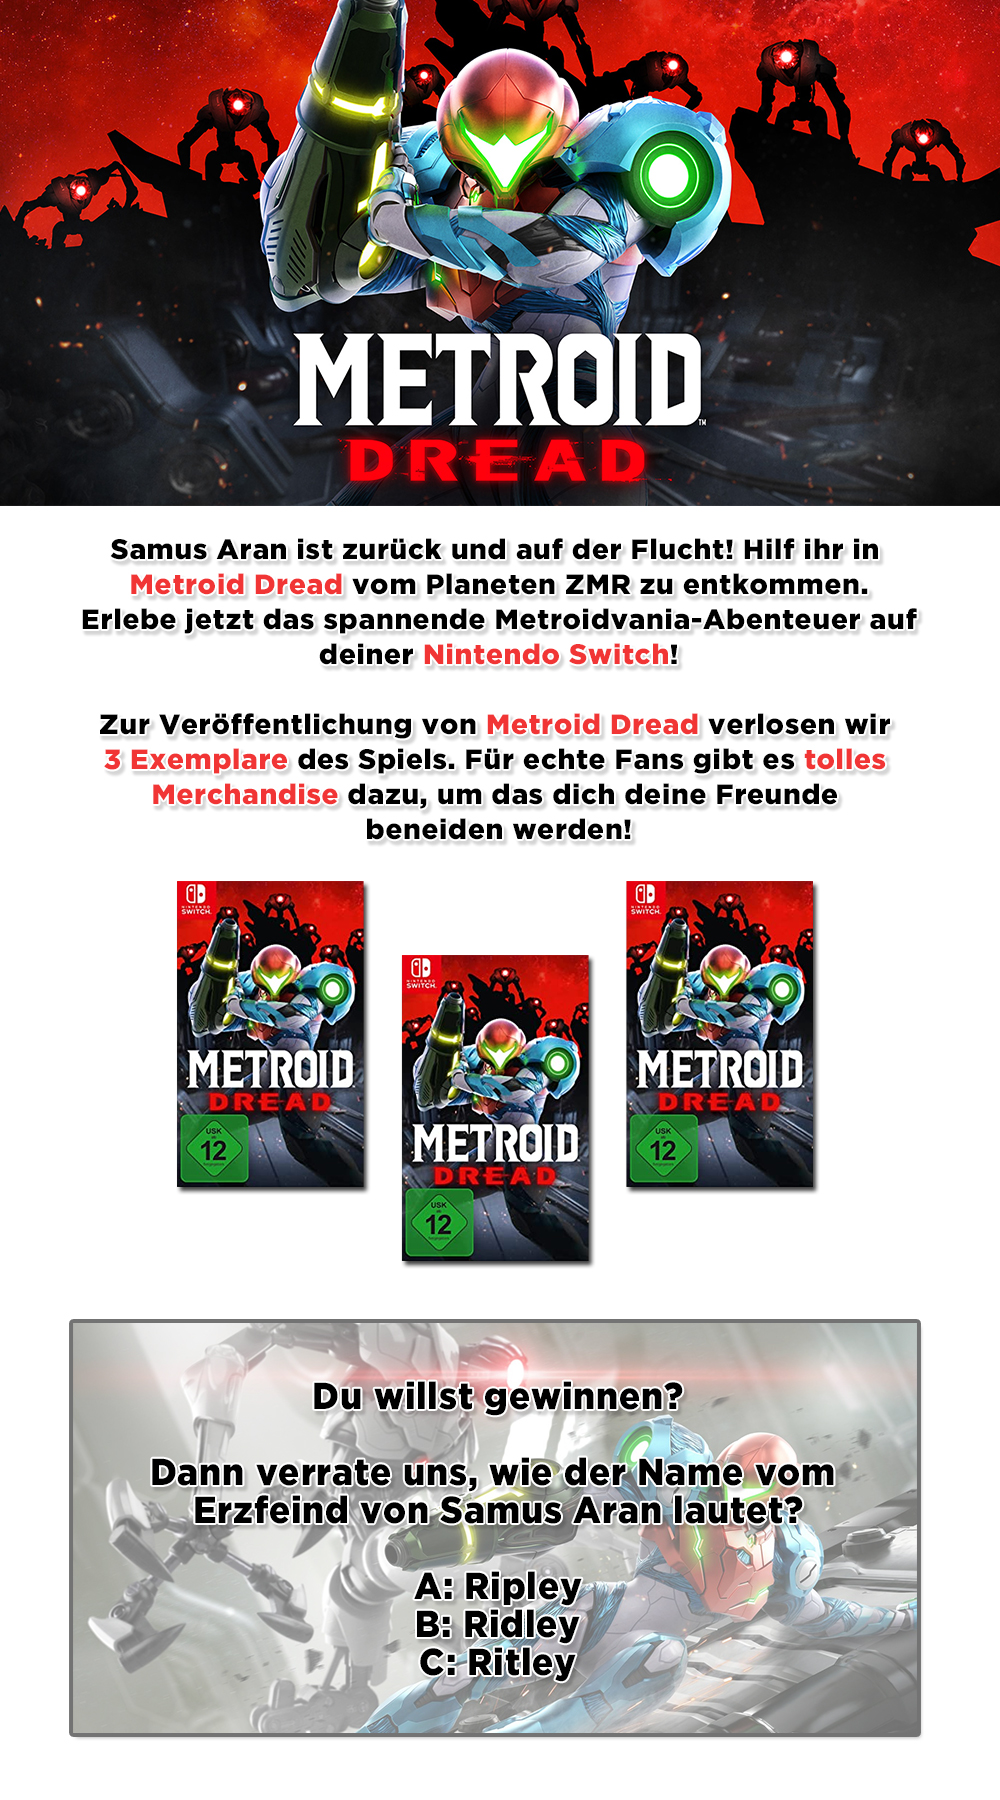 Bild 1:Gewinne eines von drei Exemplaren von "Metroid Dread"